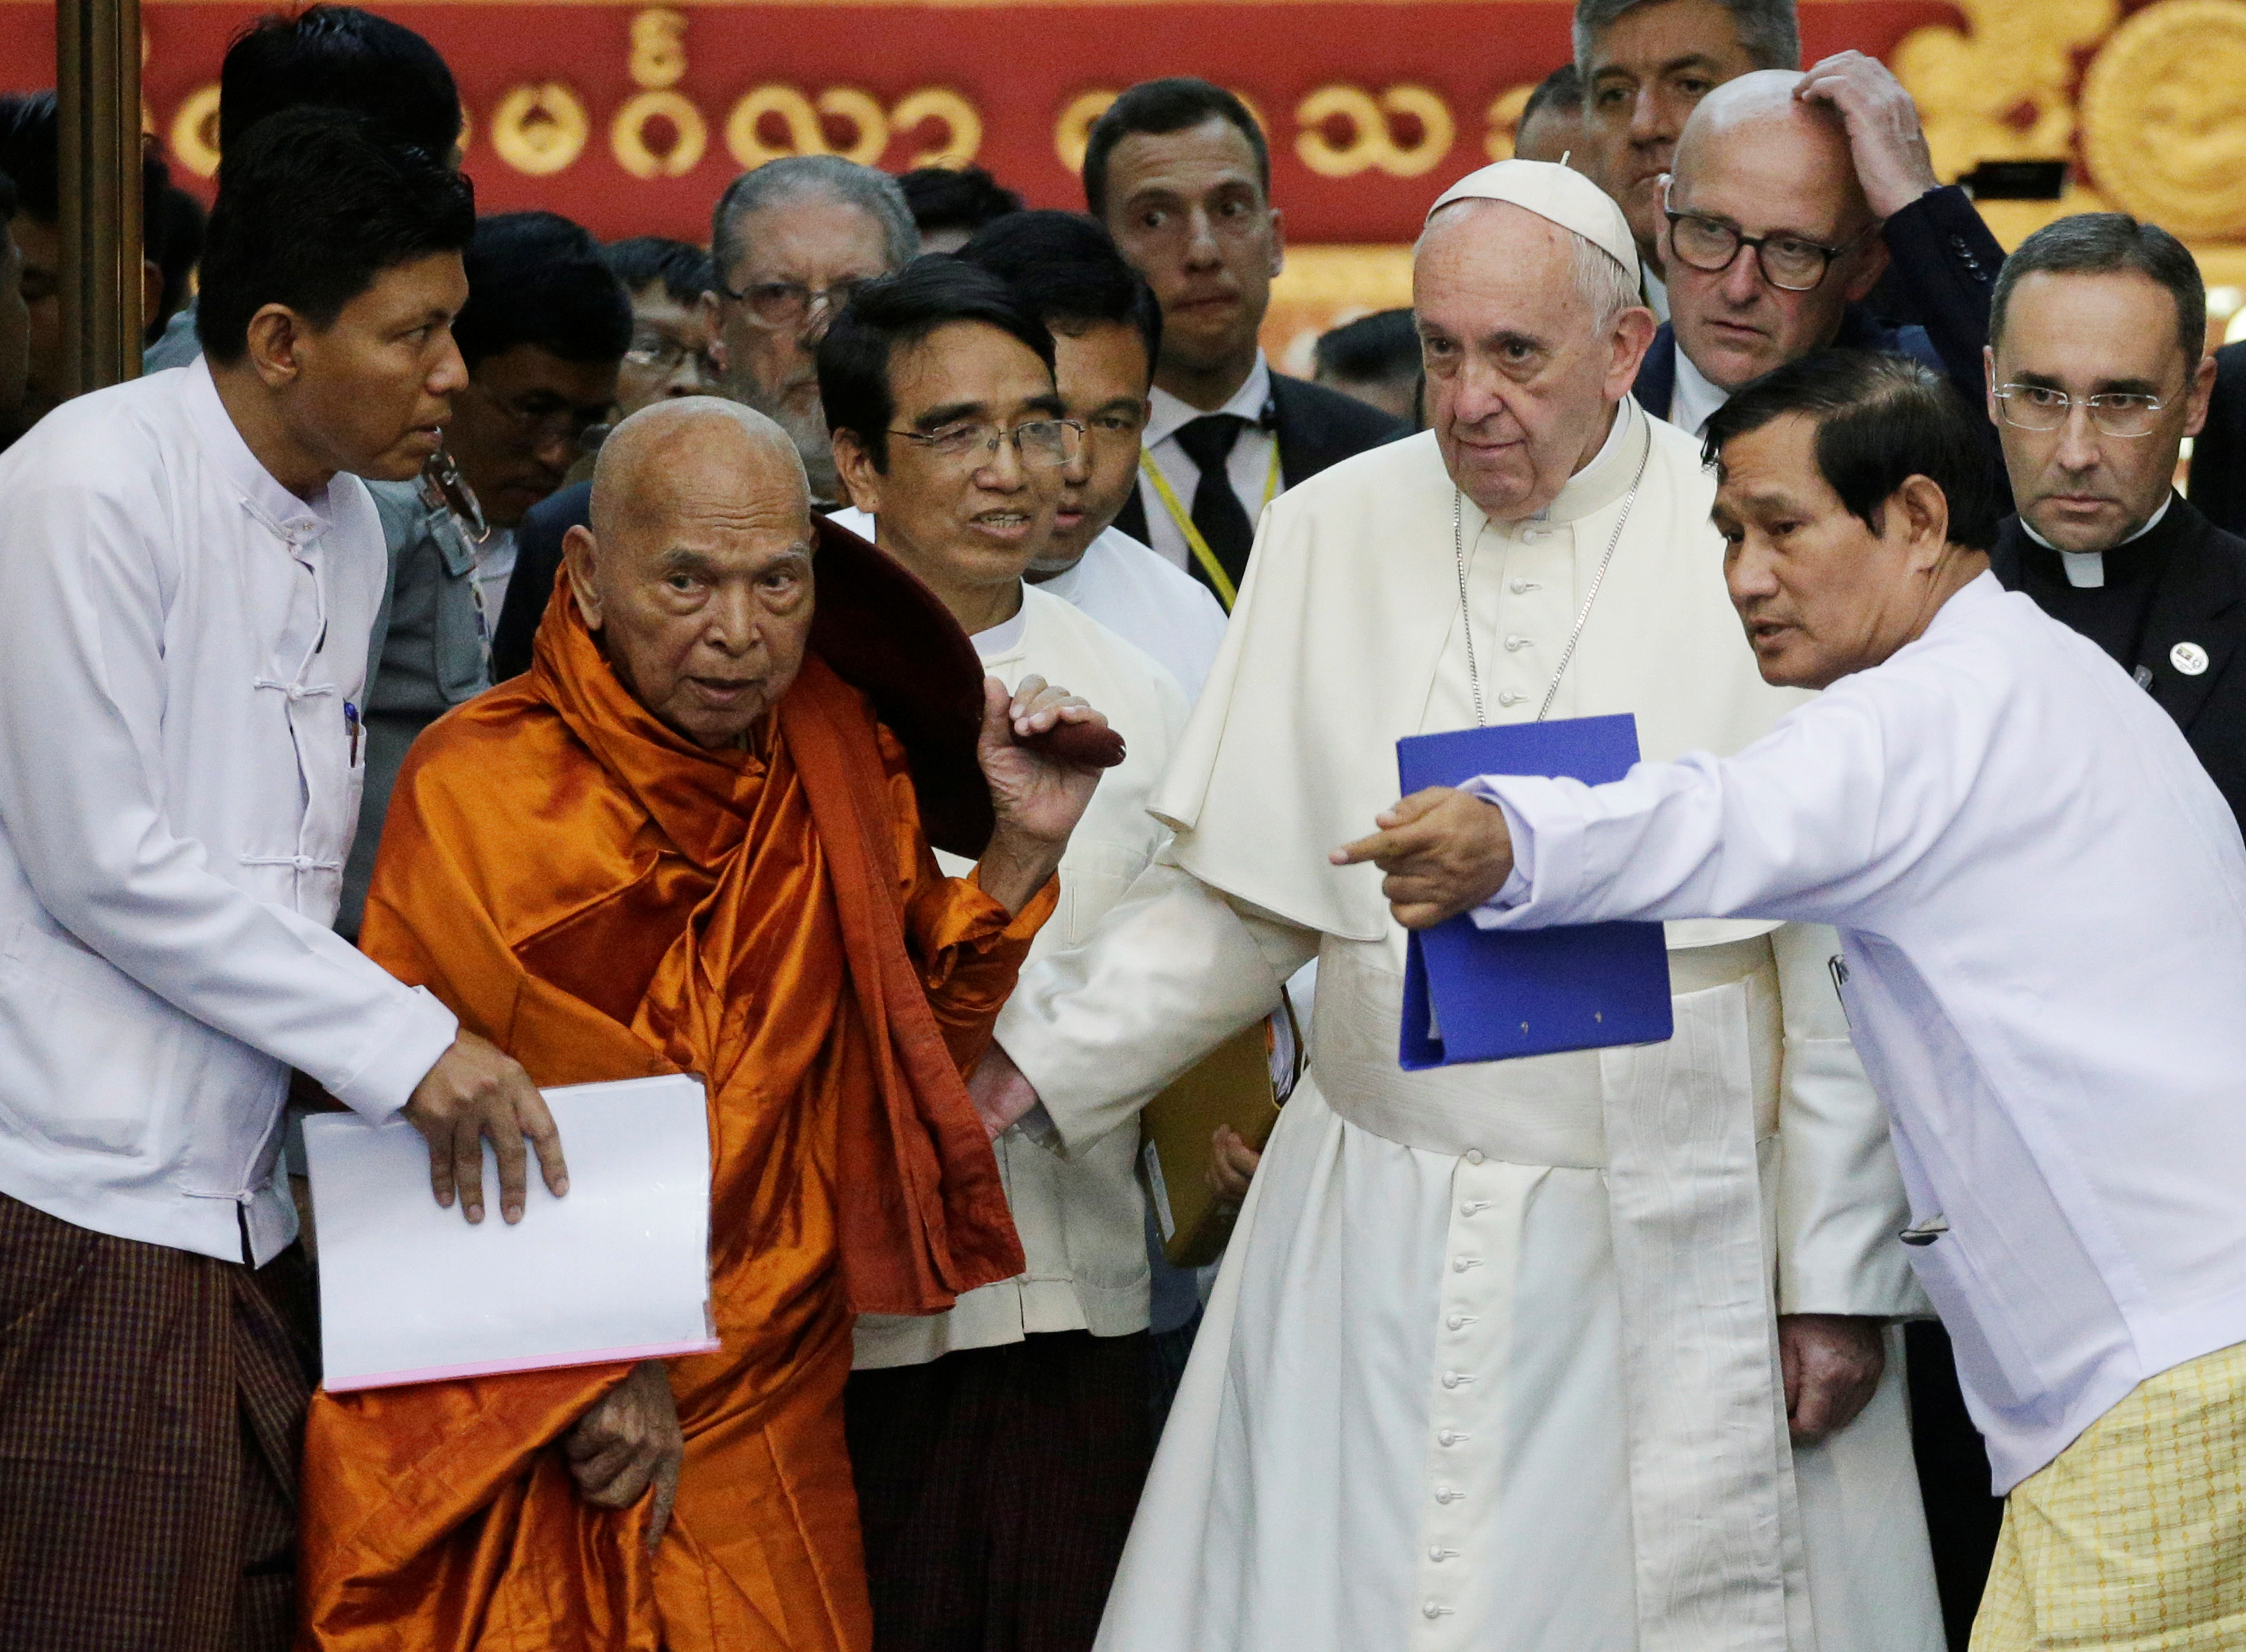 البابا فرنسيسفى بورما